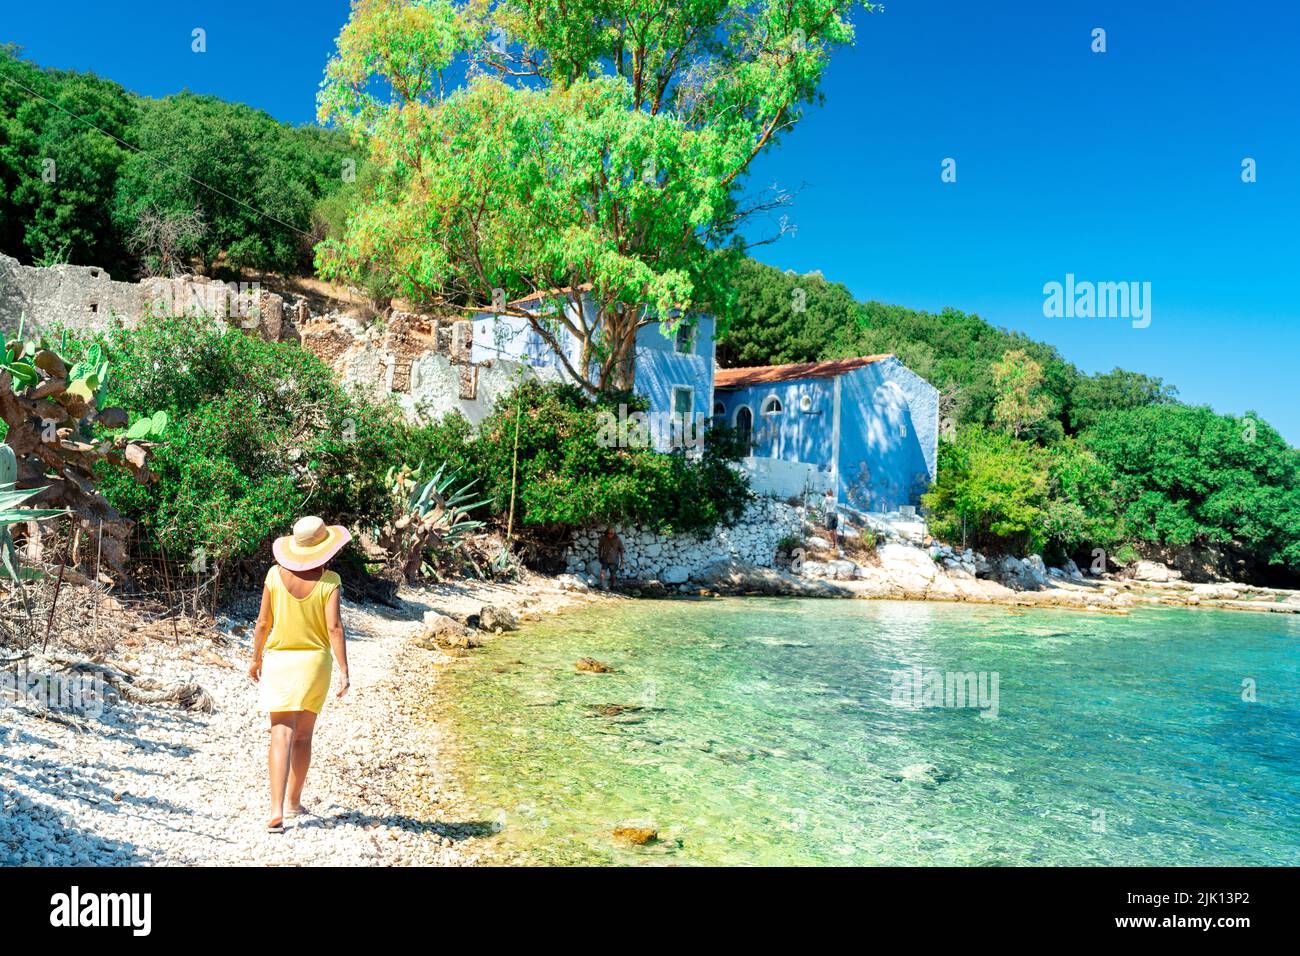 Femme marchant sur des galets blancs d'une plage entourée d'arbres, Porto Atheras, Kefalonia, Iles Ioniennes, Iles grecques, Grèce, Europe Banque D'Images